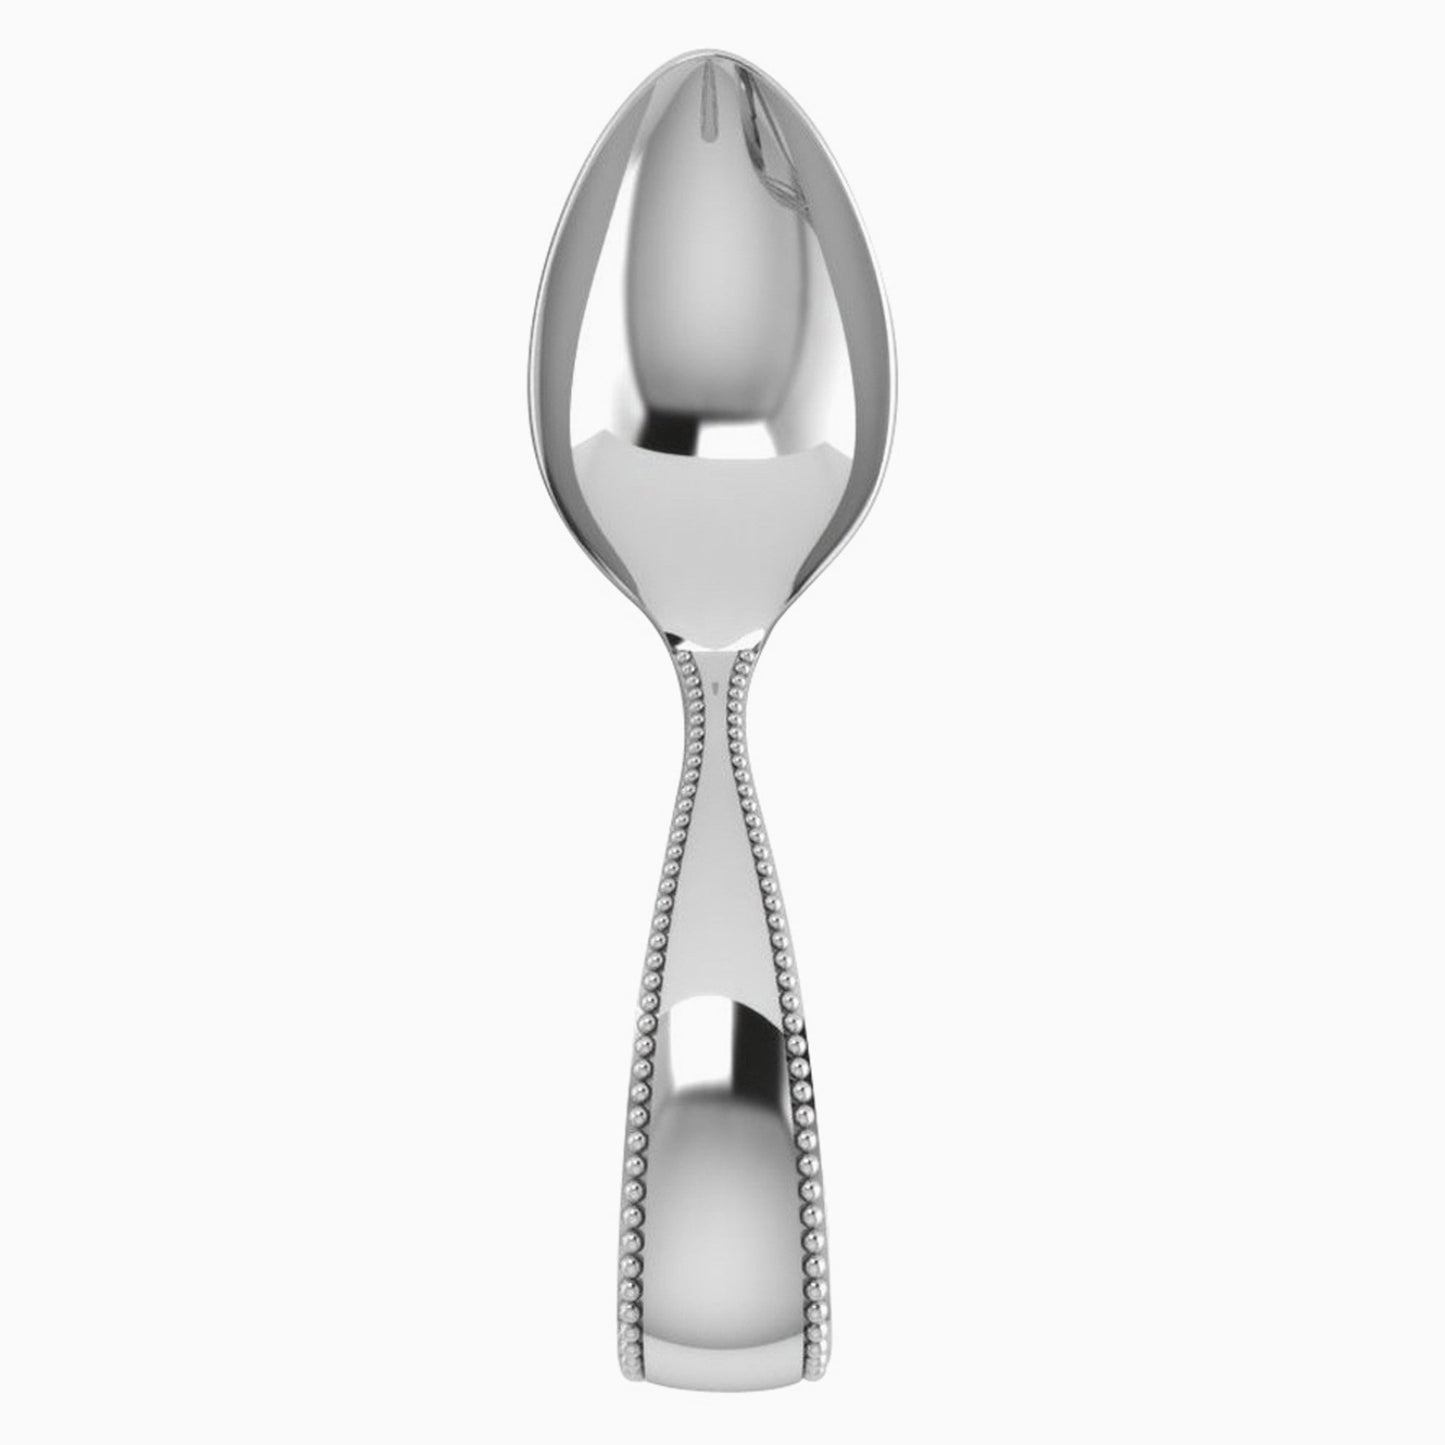 Beaded Loop Sterling Silver Baby Feeding Spoon by Krysaliis